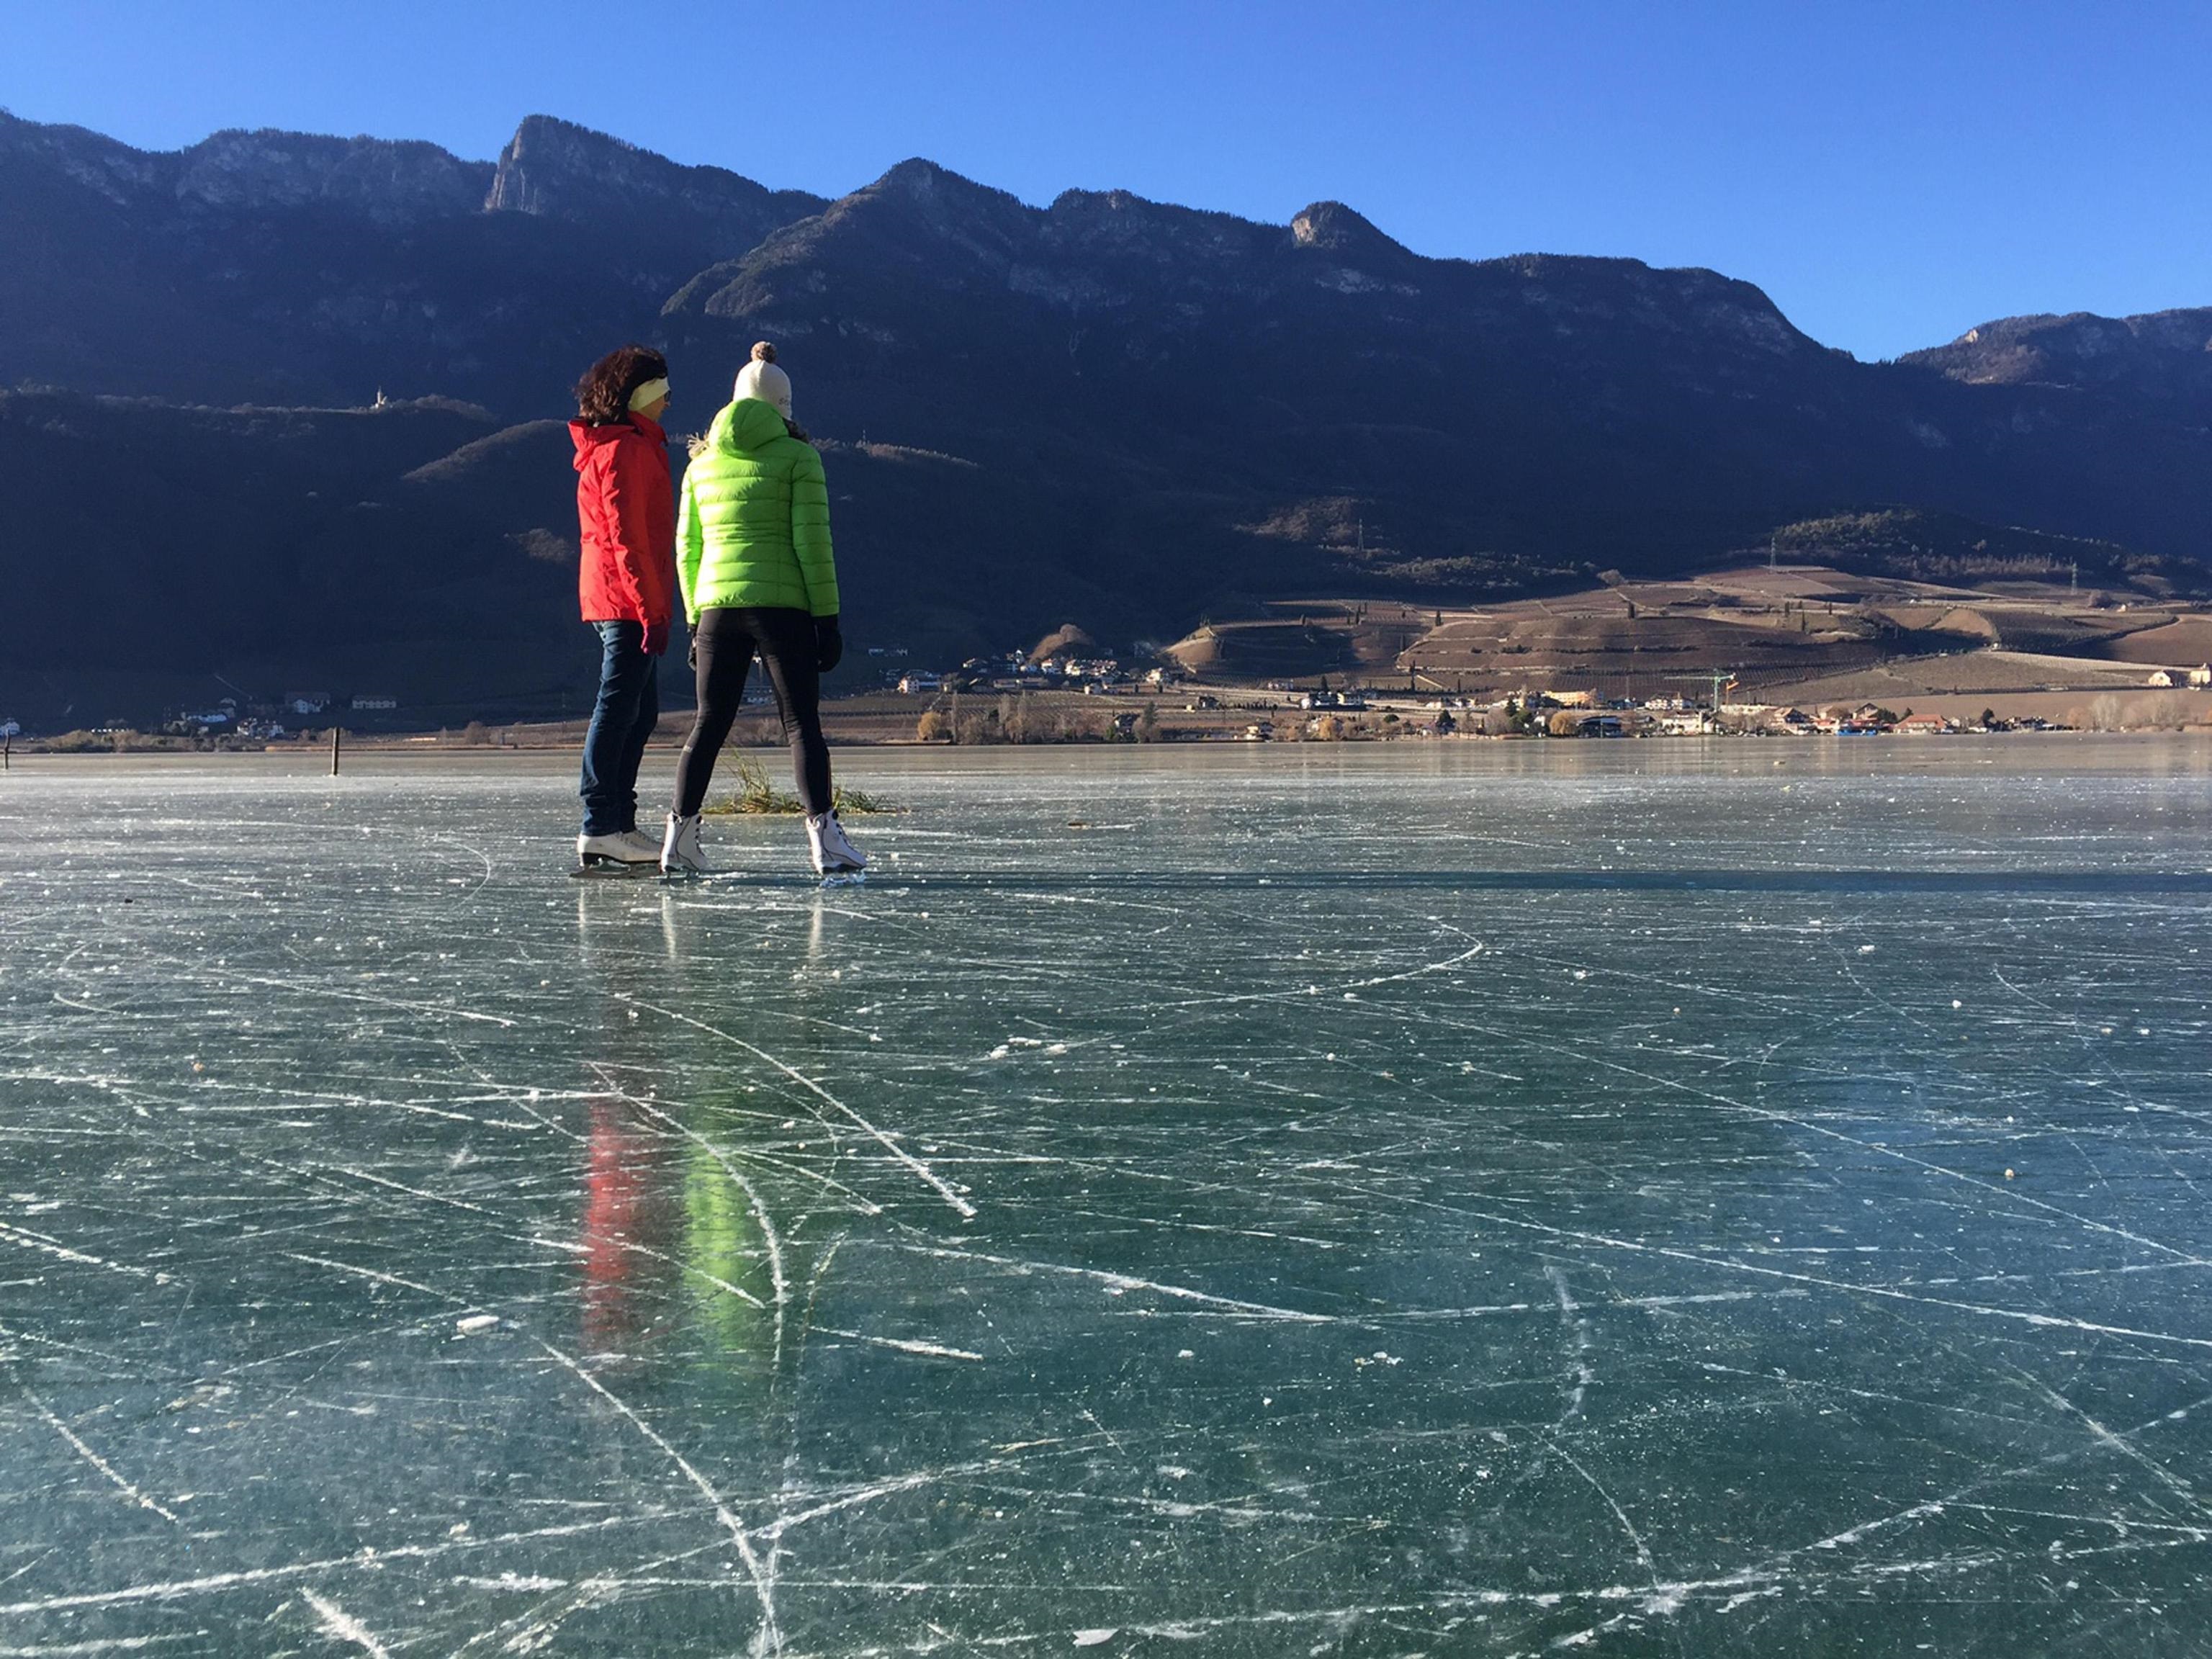 Grazie al freddo polare gli appassionati del pattinaggio sul giacchio sono tornati, dopo lunga assenza, sul lago di Caldaro. Il lago alle porte di Bolzano, una volta mecca per i pattinatori, da ormai quattro anni non gelava più, 6 gennaio 2017. ANSA/ROBERTO TOMASI